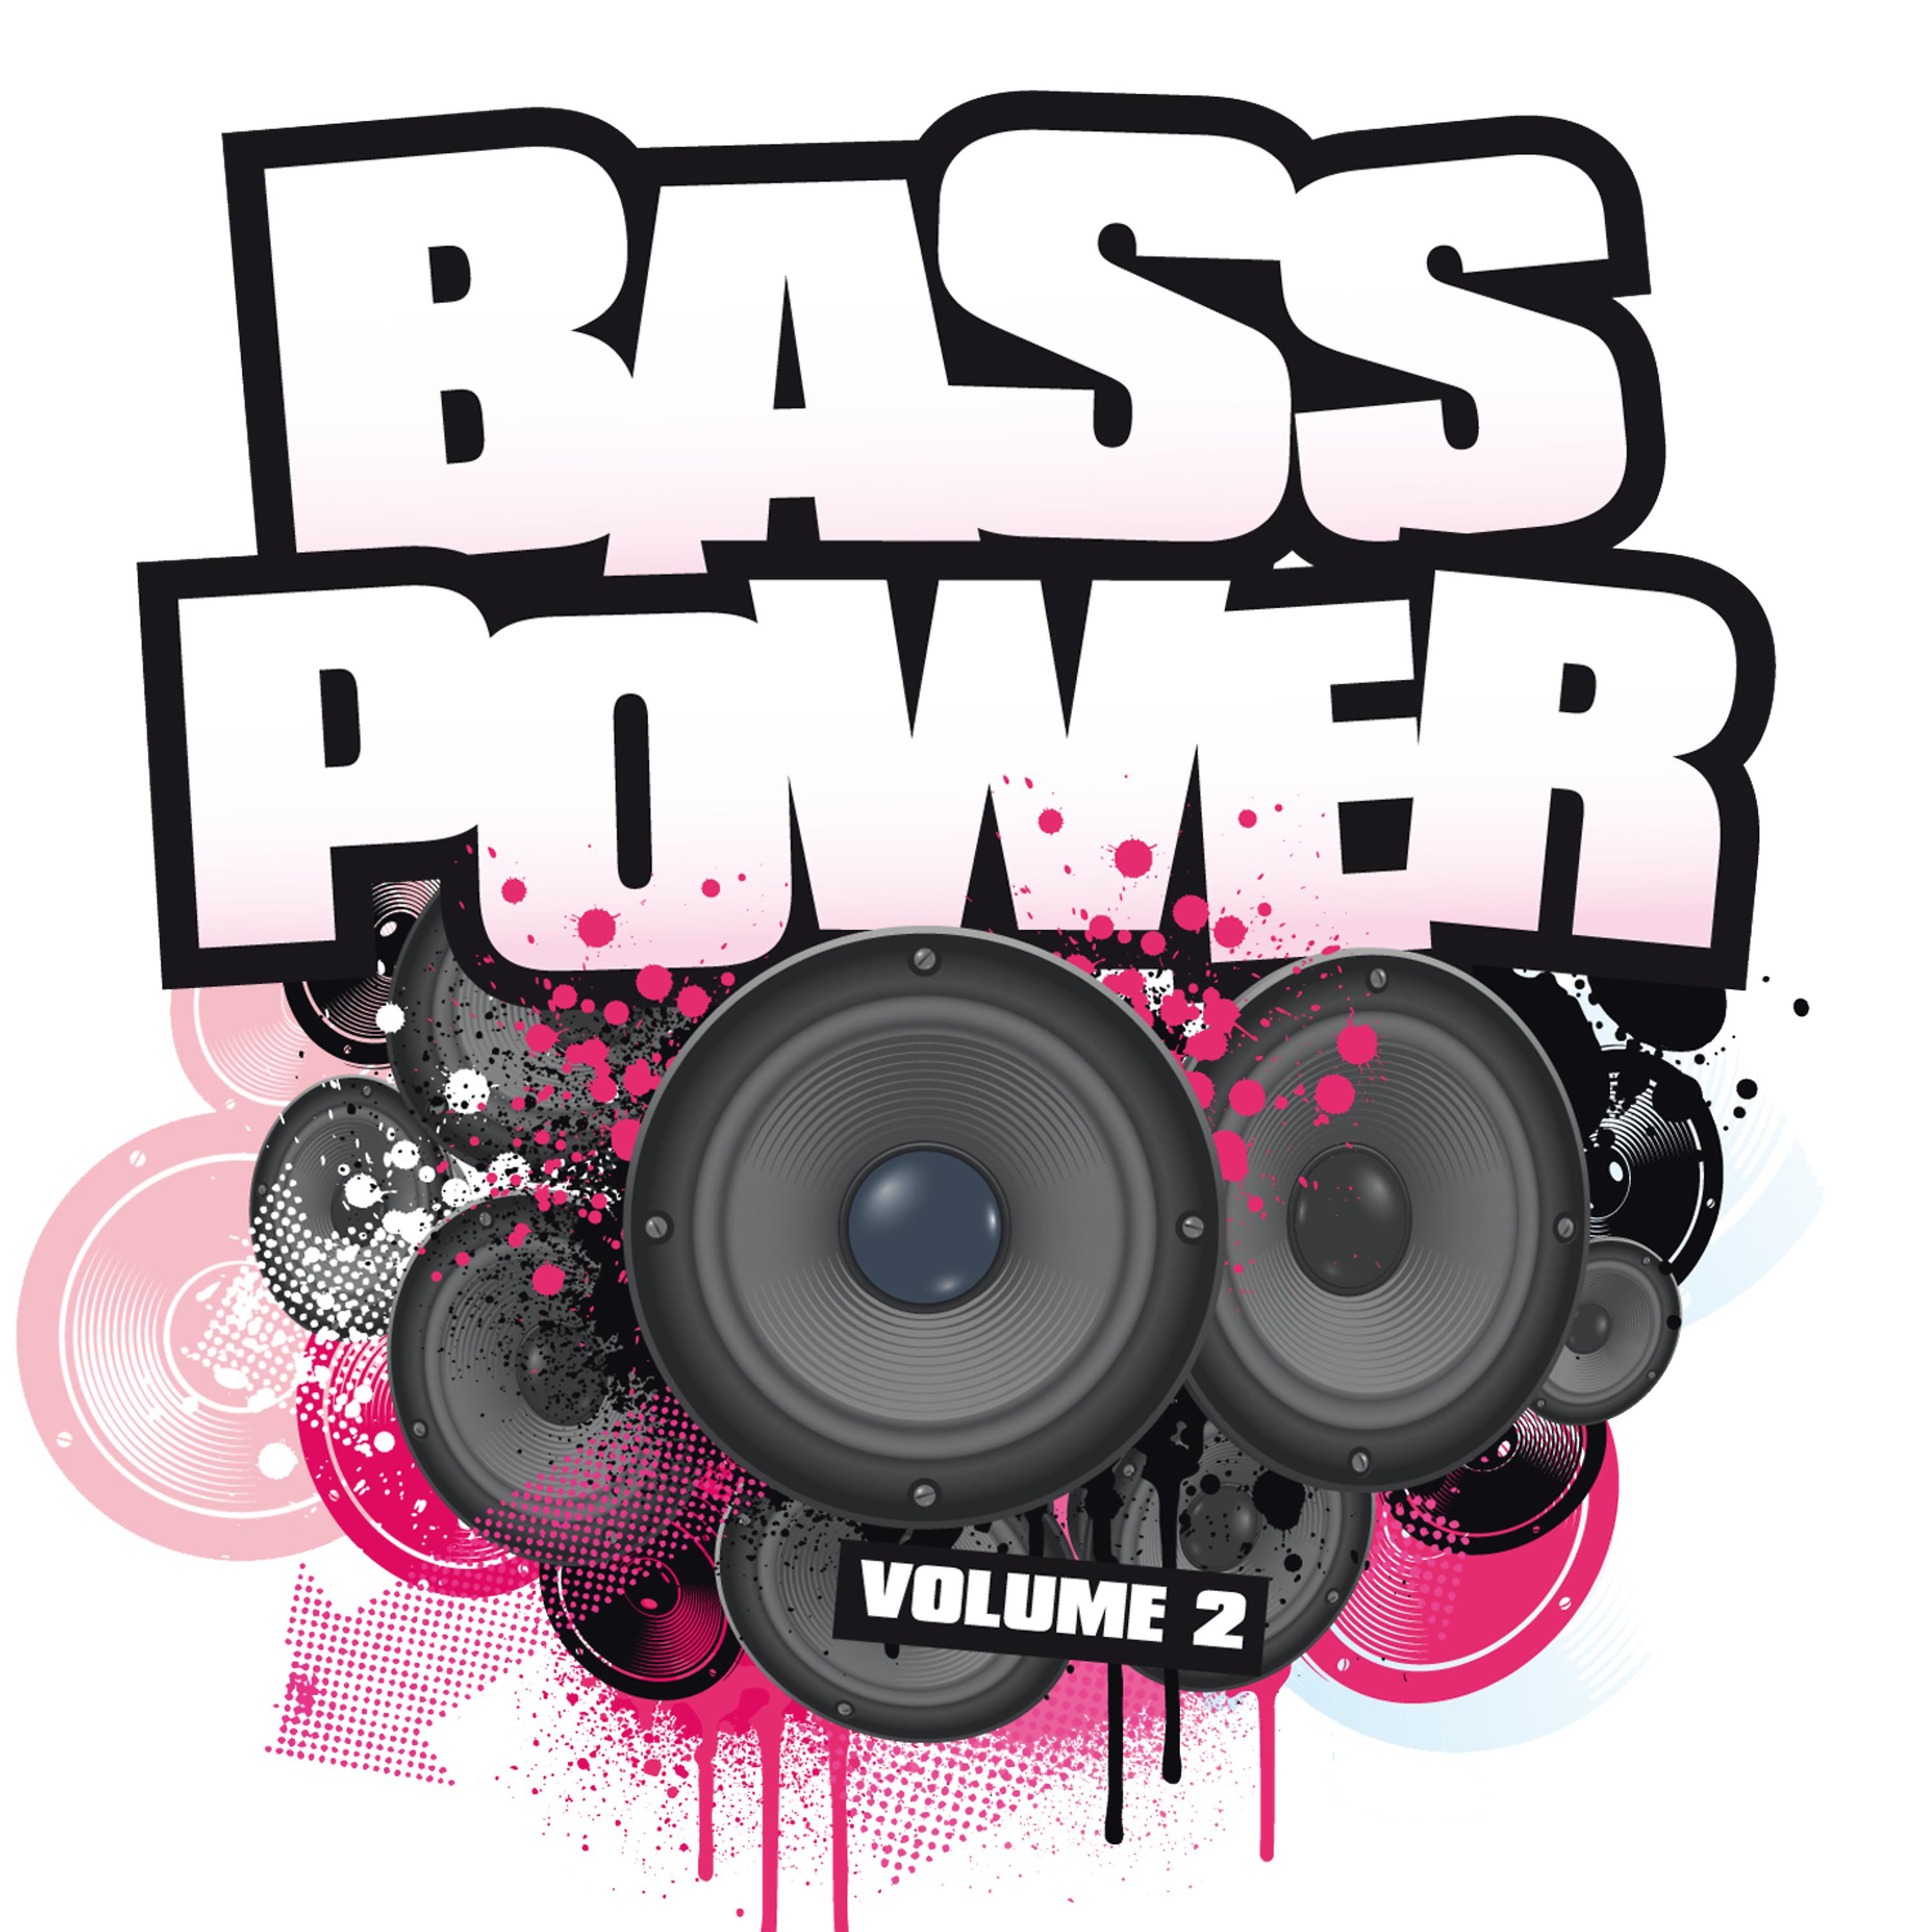 Музыка бас 2. Музыка с басами. Bass Power Art. Картинка басс лака. Музыка с басами с названиями.